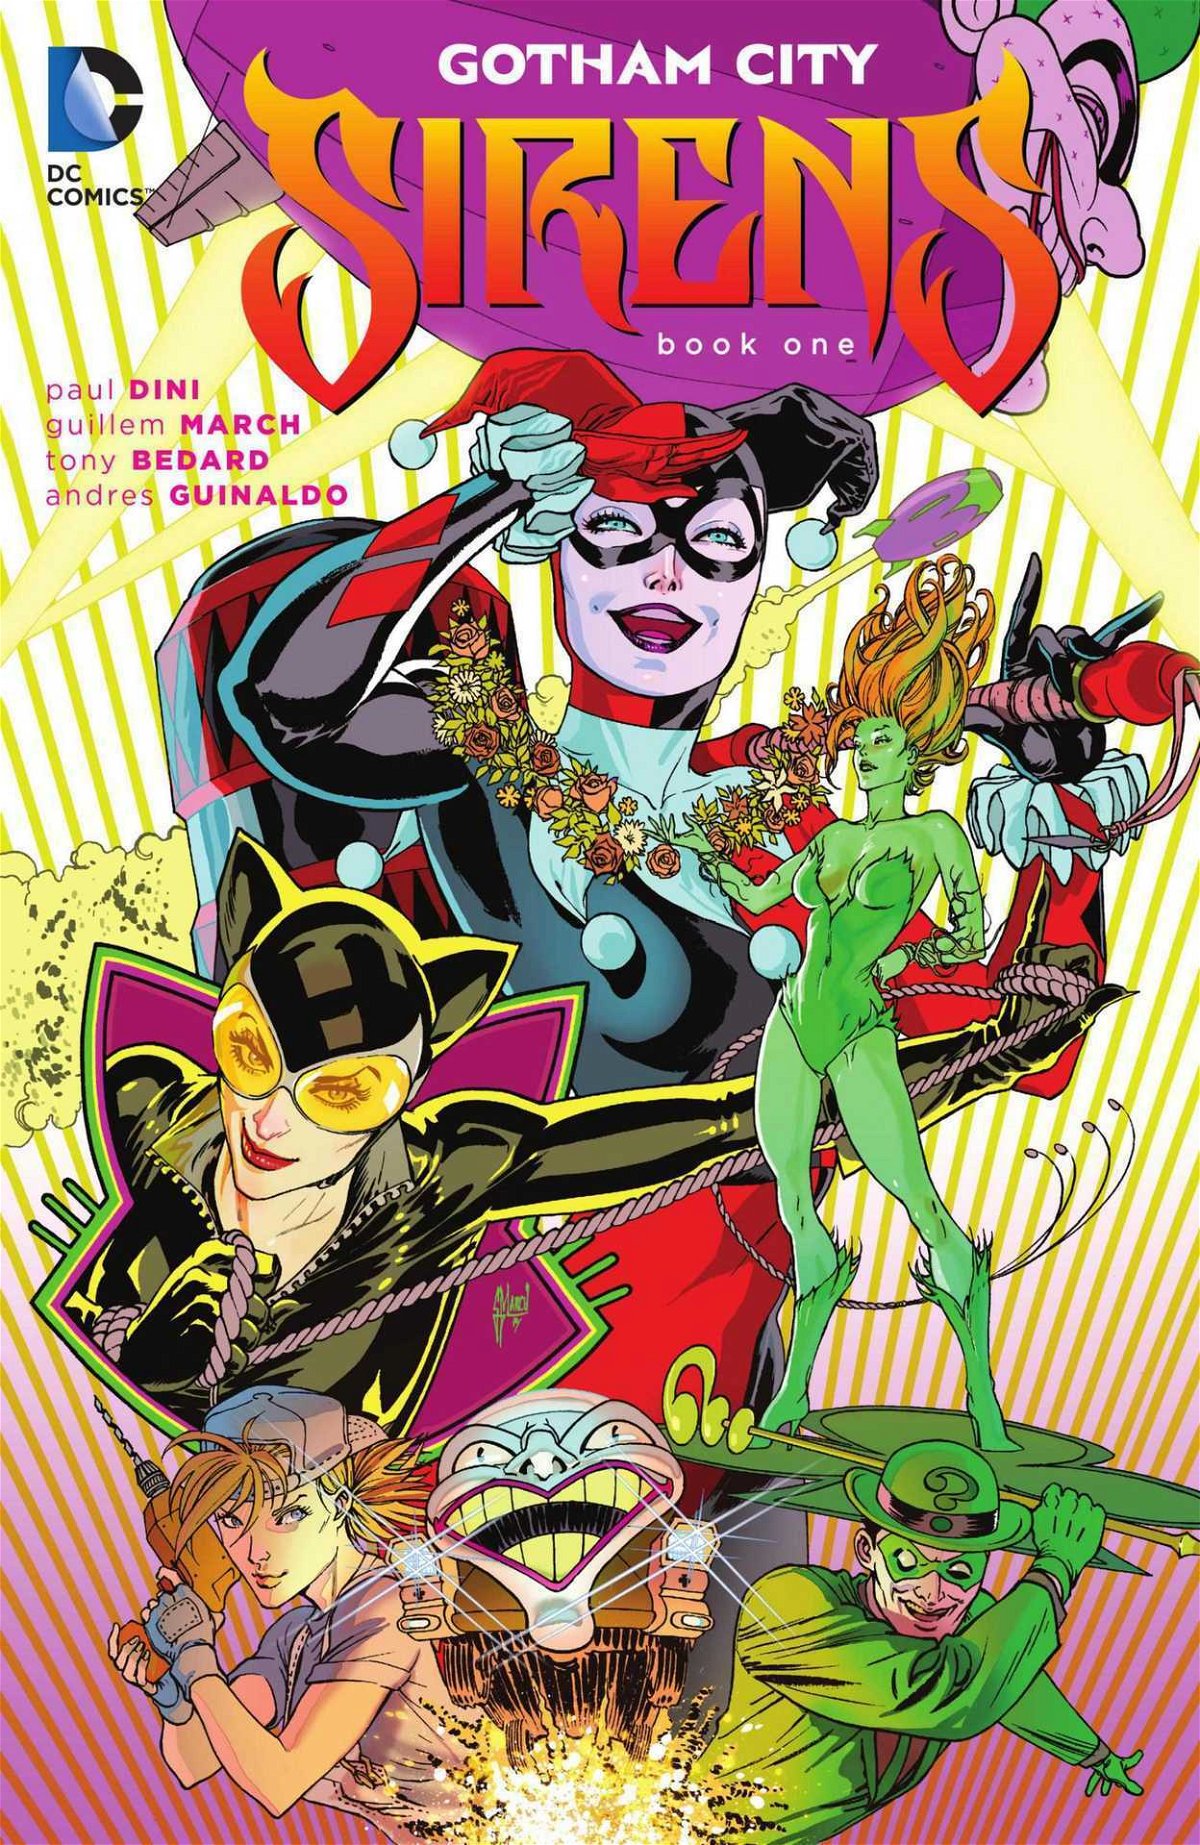 Il primo volume del comic Gotham City Sirens